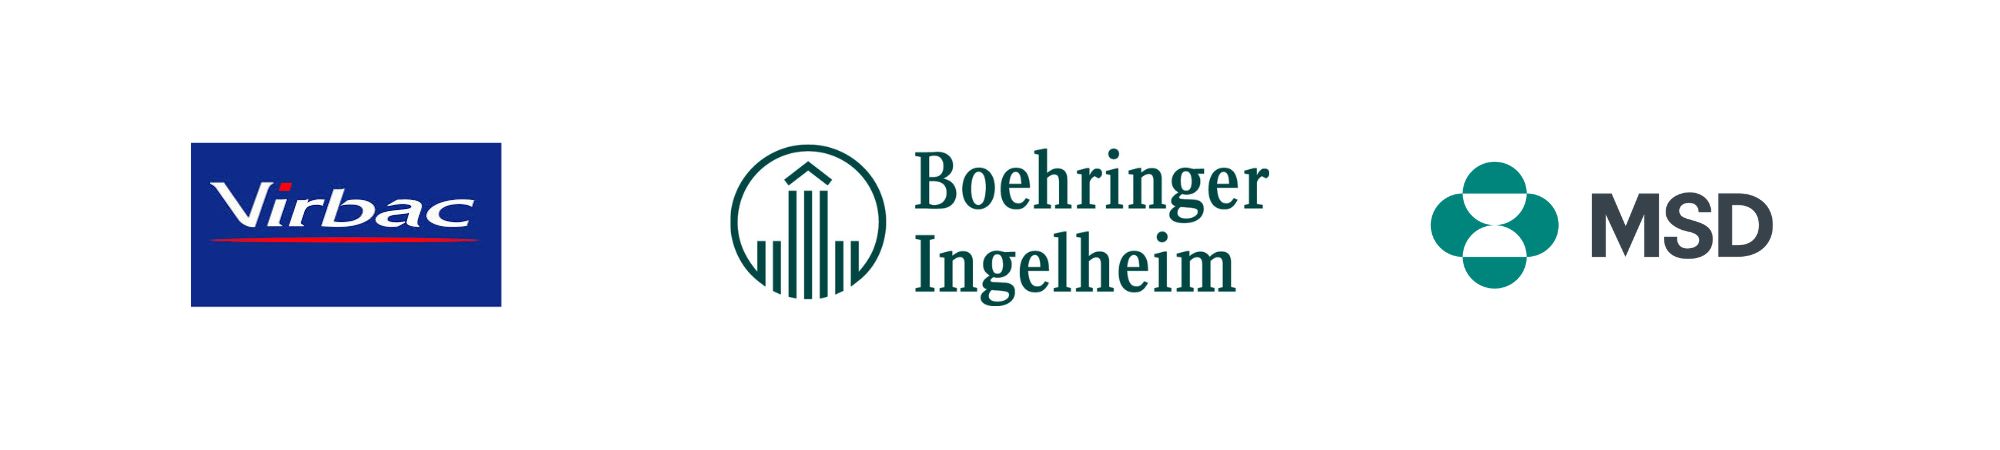 Logos Virbac, Boehringer Ingelheim et MSD